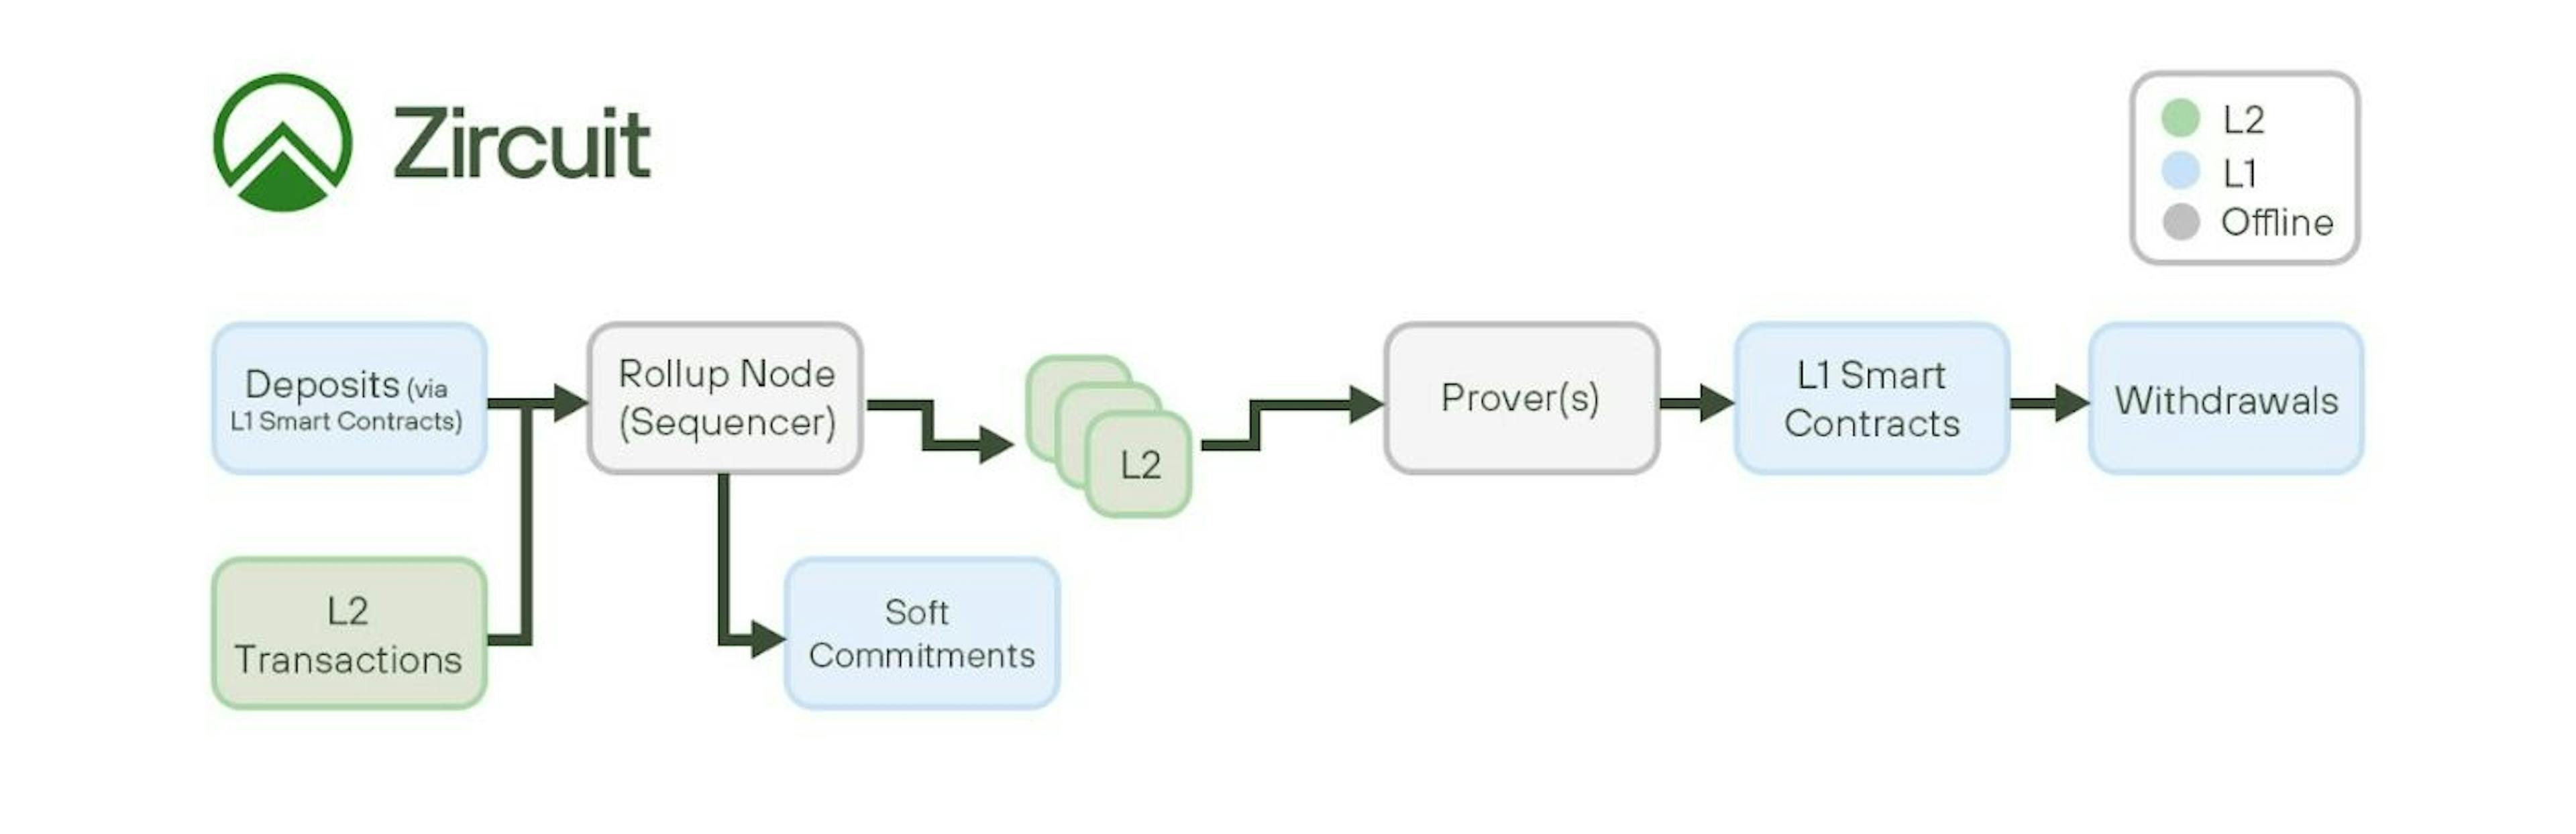 Zircuit transaction flow — Source: Zircuit Developer Docs